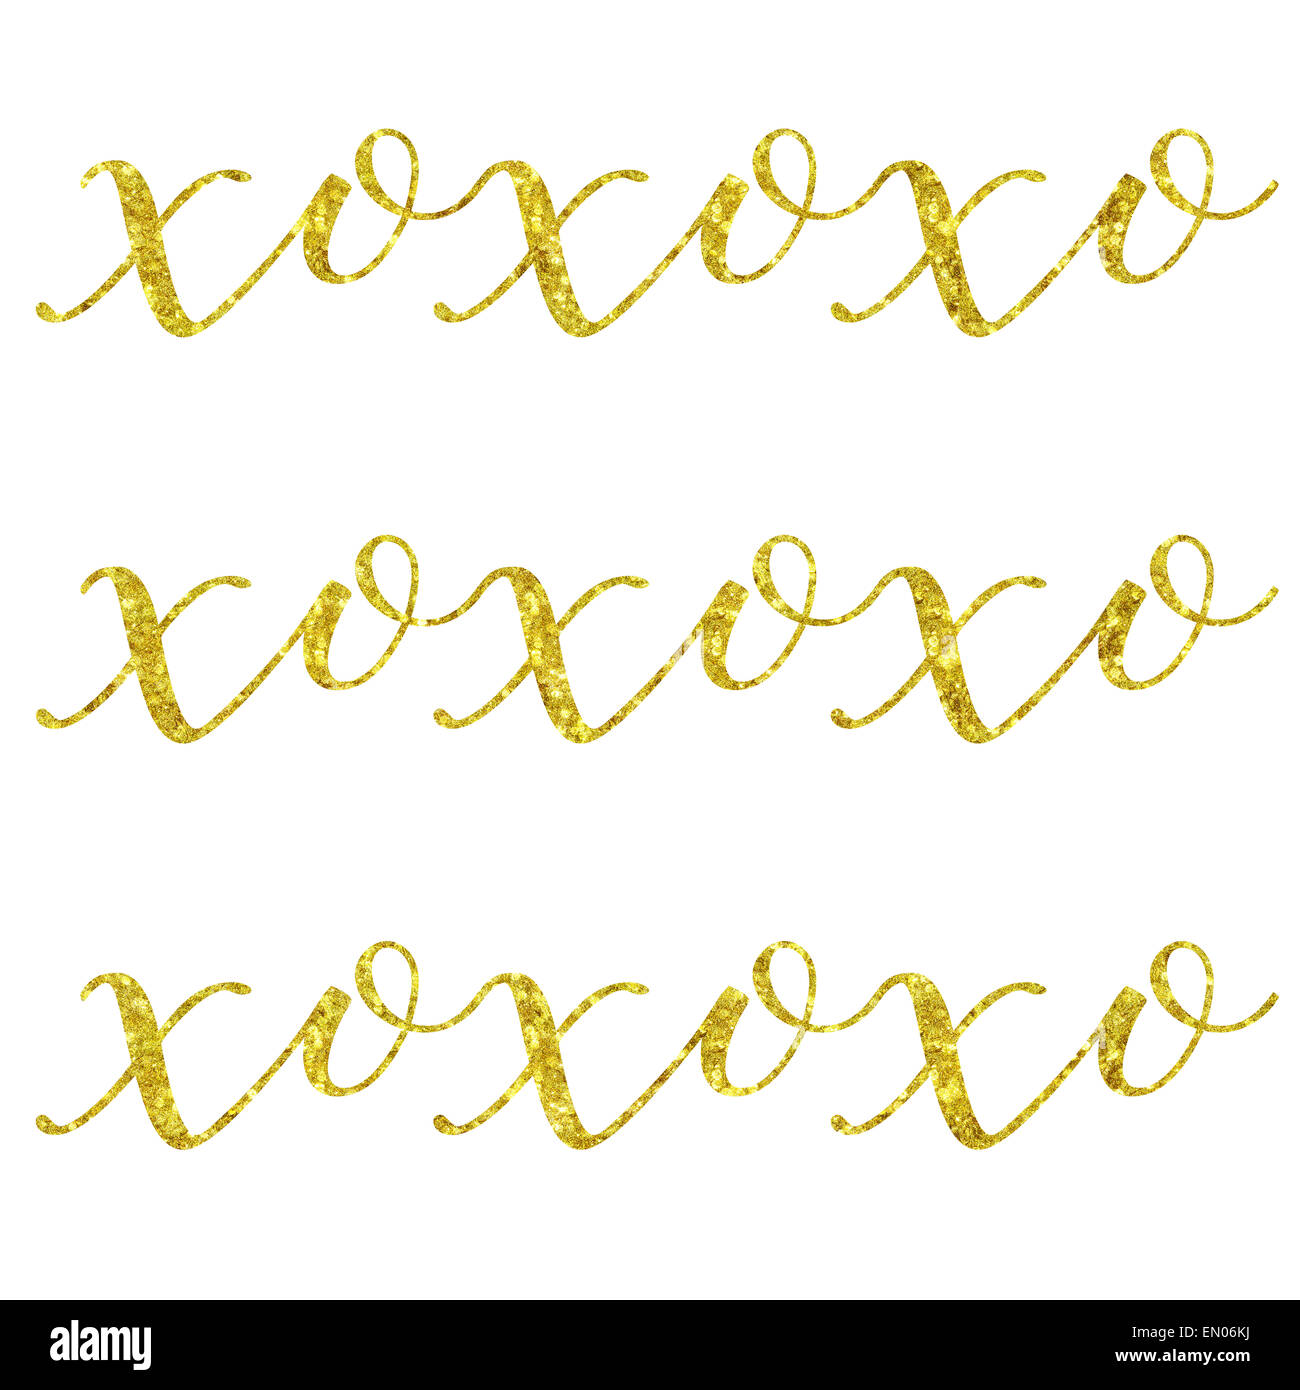 XOXO Baci e abbracci Glittery oro in similpelle di lamina metallica di ispirazione amore preventivo isolati su sfondo bianco Foto Stock